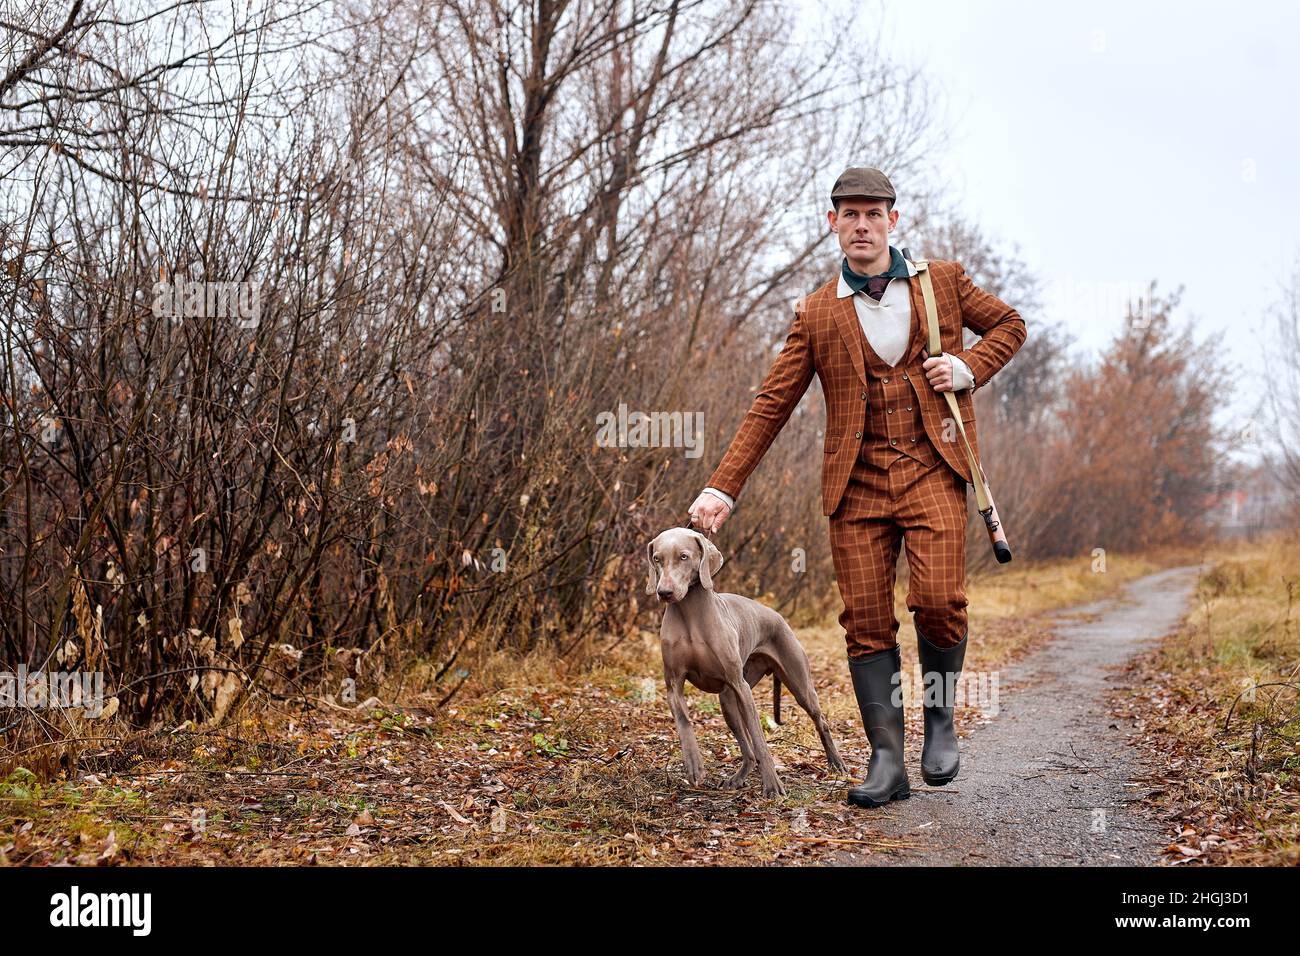 Homme confiant chasseur avec chien de chasse Weimaraner ami portrait en zone rurale pendant la saison de chasse, beau type caucasien en costume brun, à pied Banque D'Images